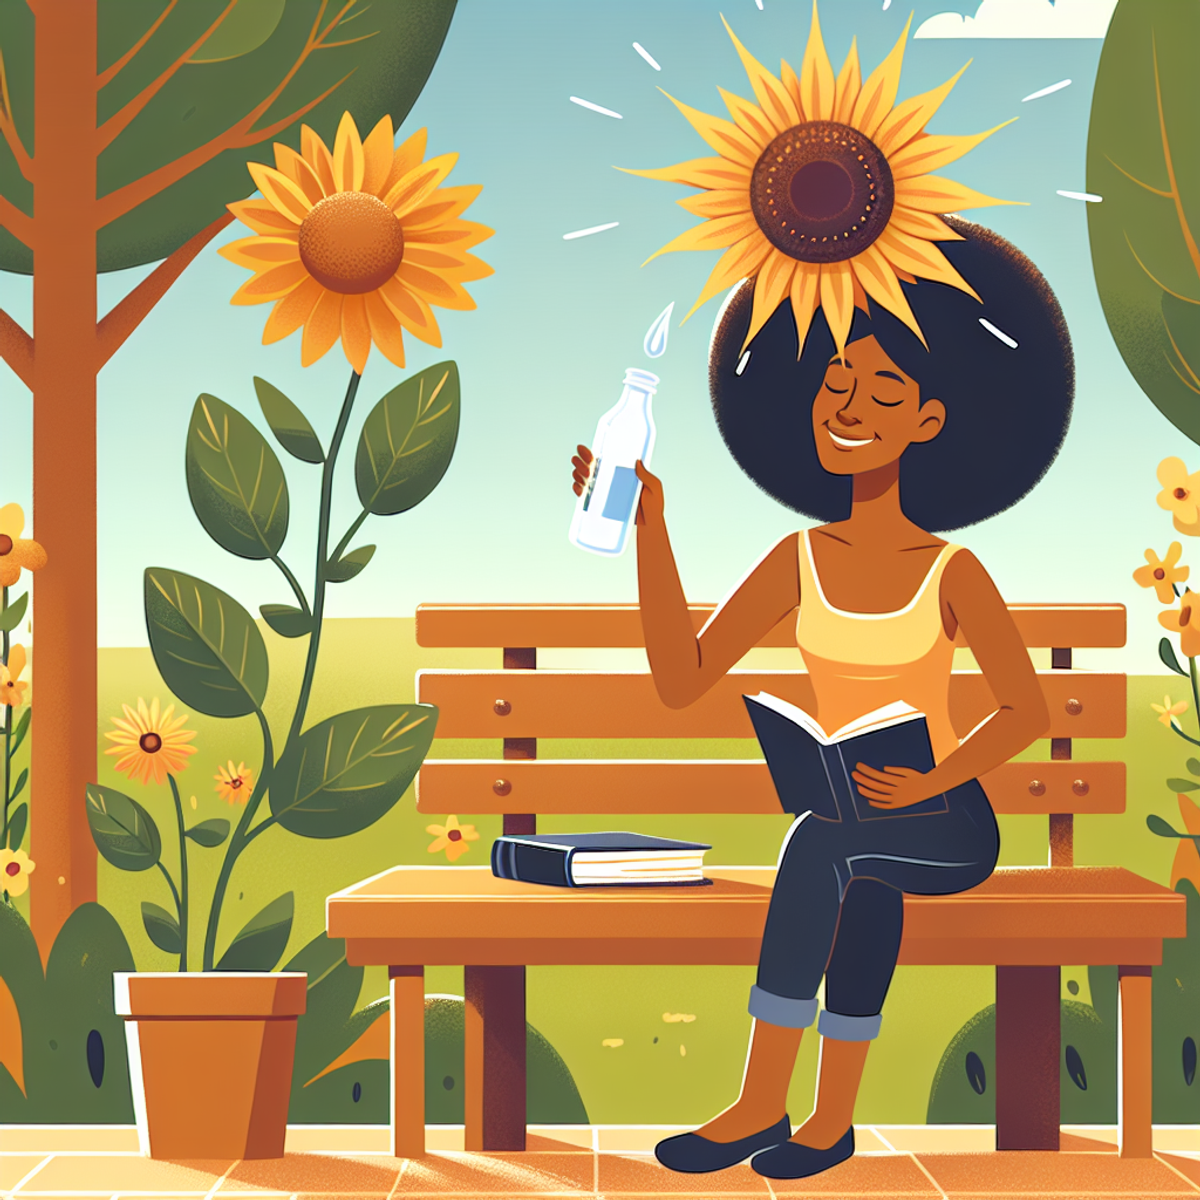 Ženska, ki sedi na klopi v parku s knjigo in steklenico z vodo, v bližini sončnice.